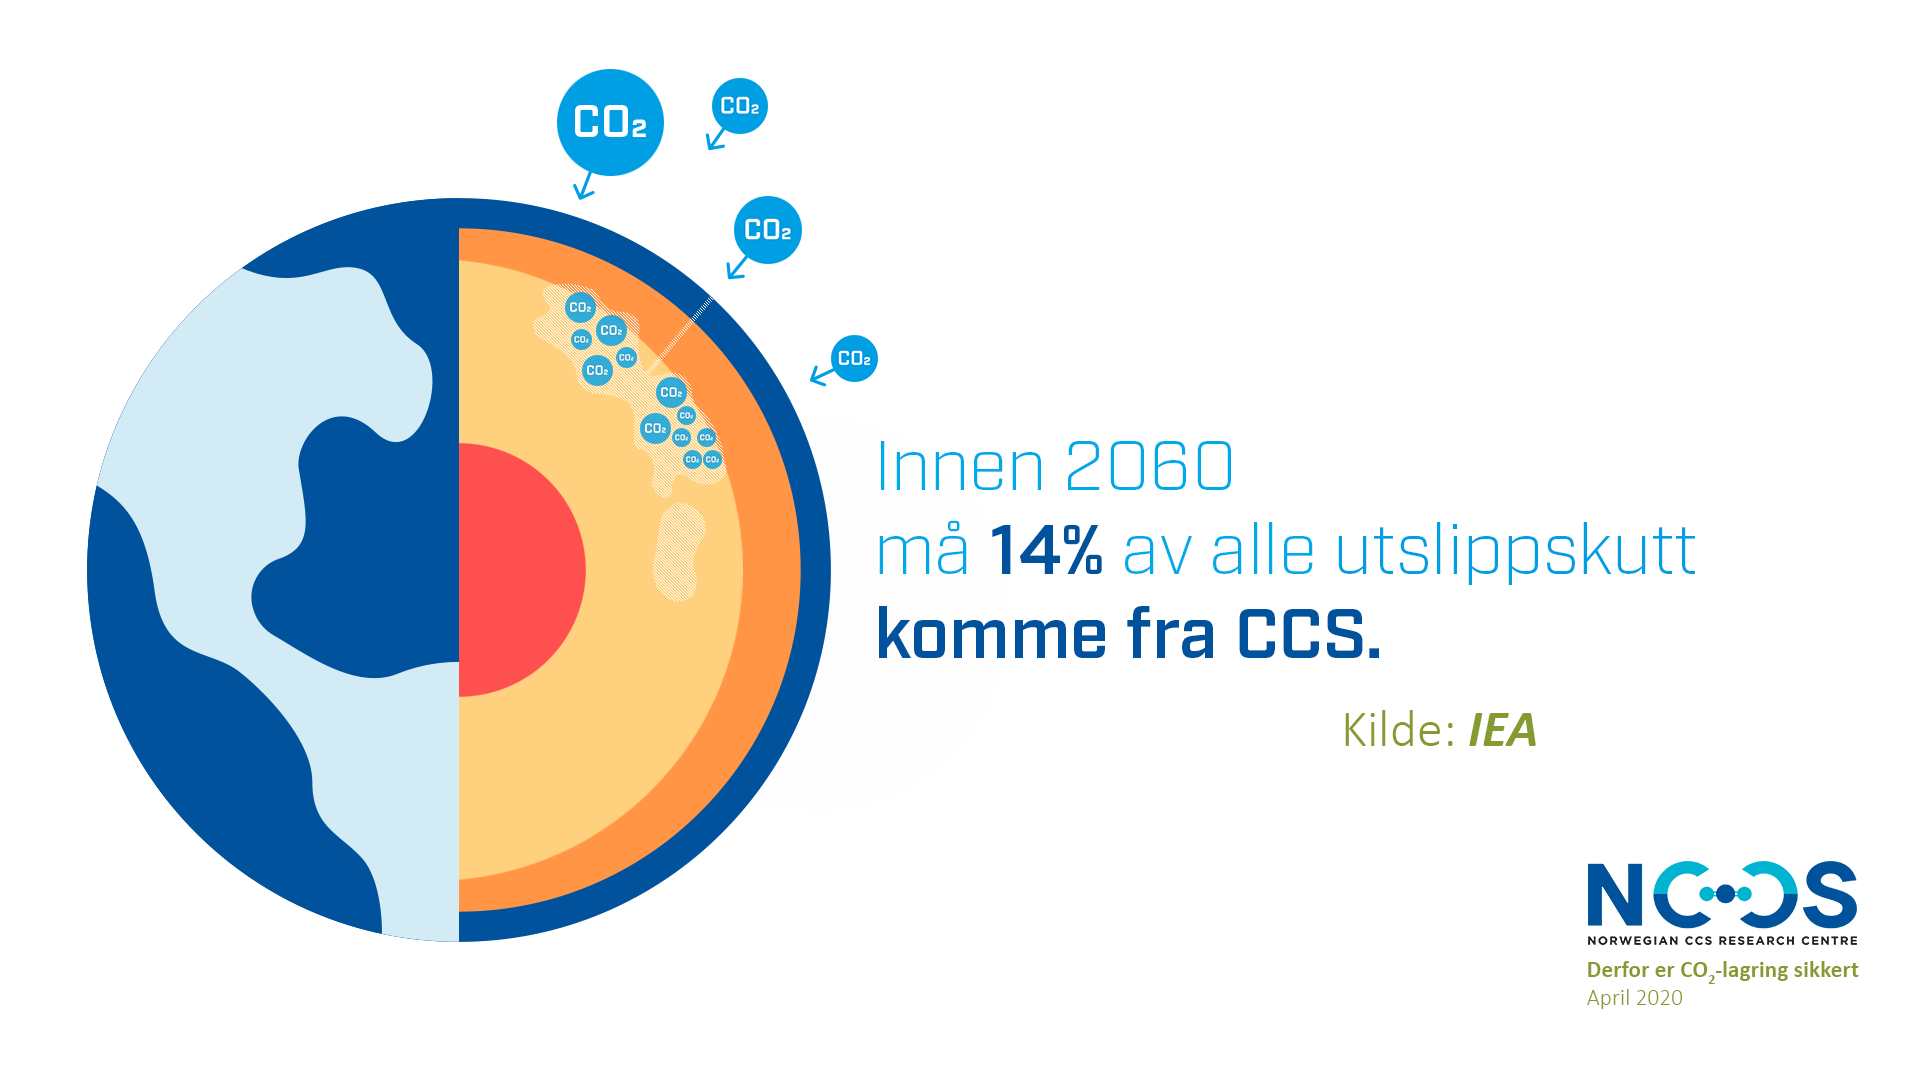 Innen 2060 må 14% av utslippskutt komme fra CCS CO2 lagring